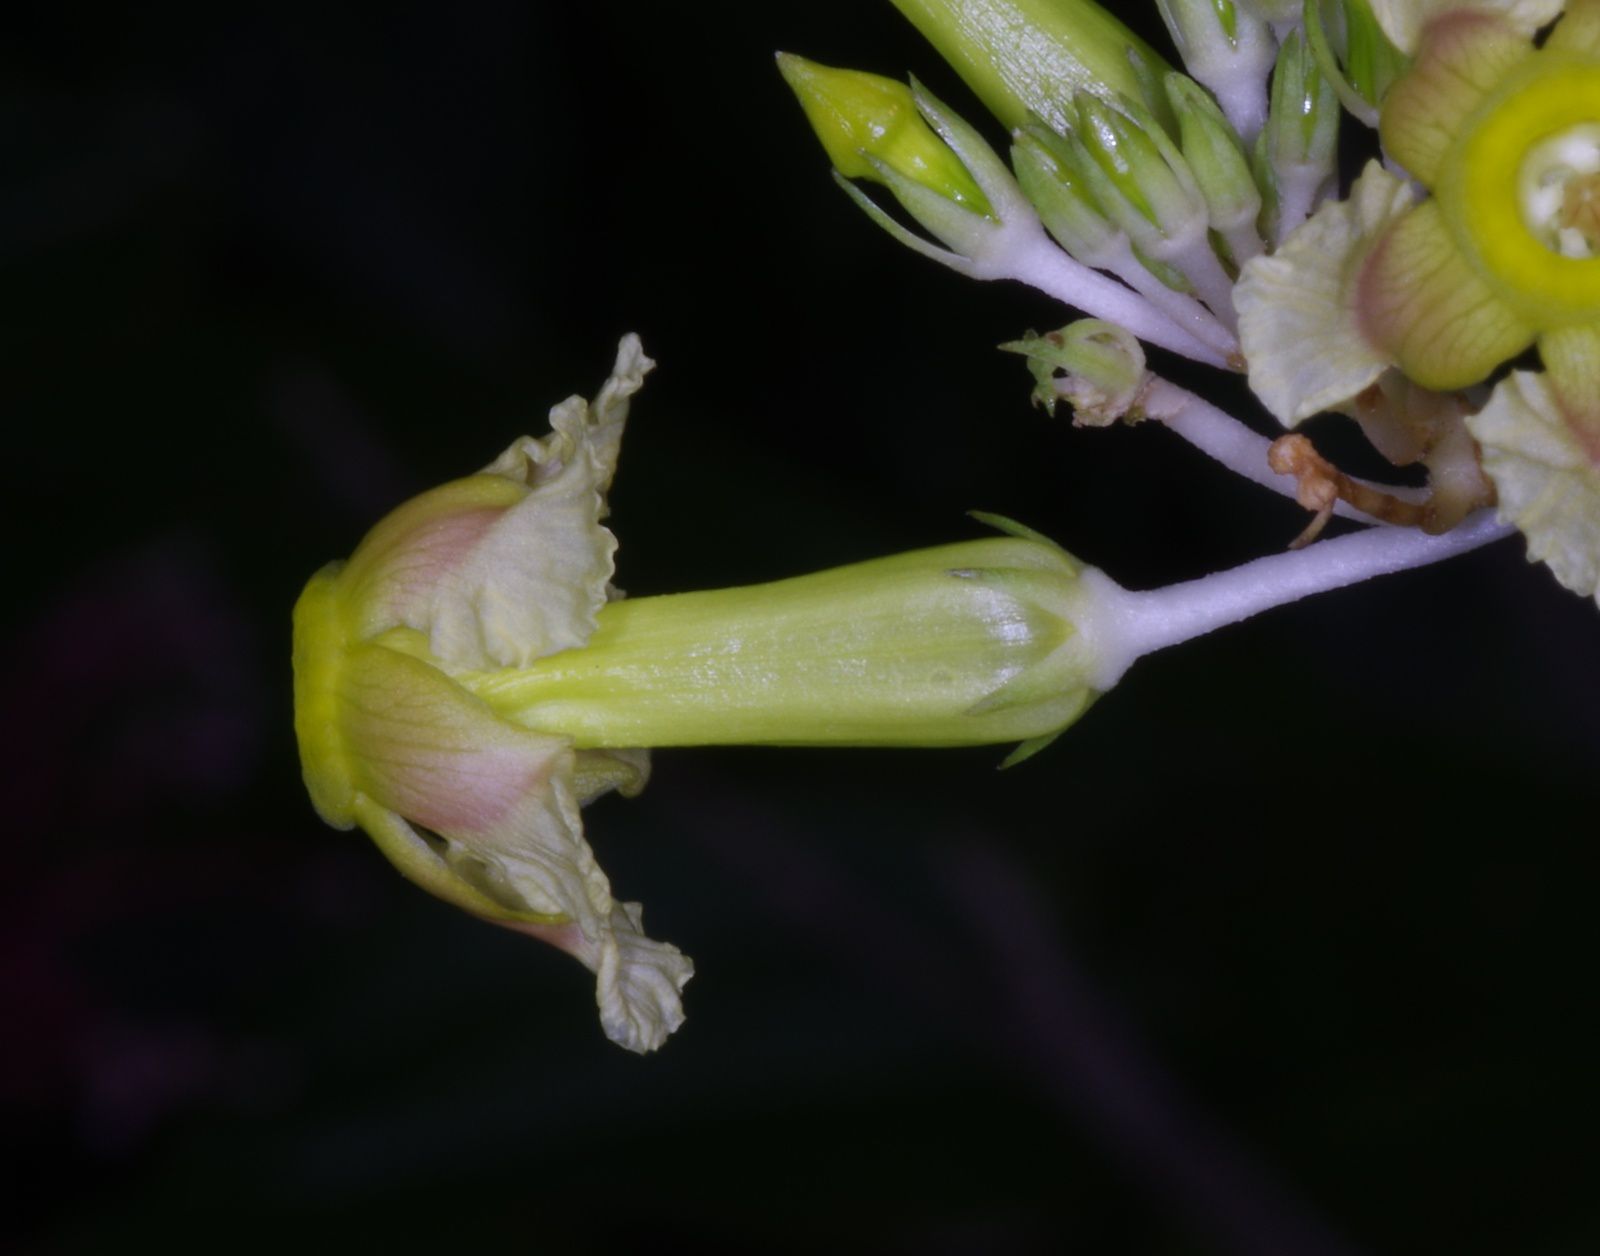 Prestonia cayennensis